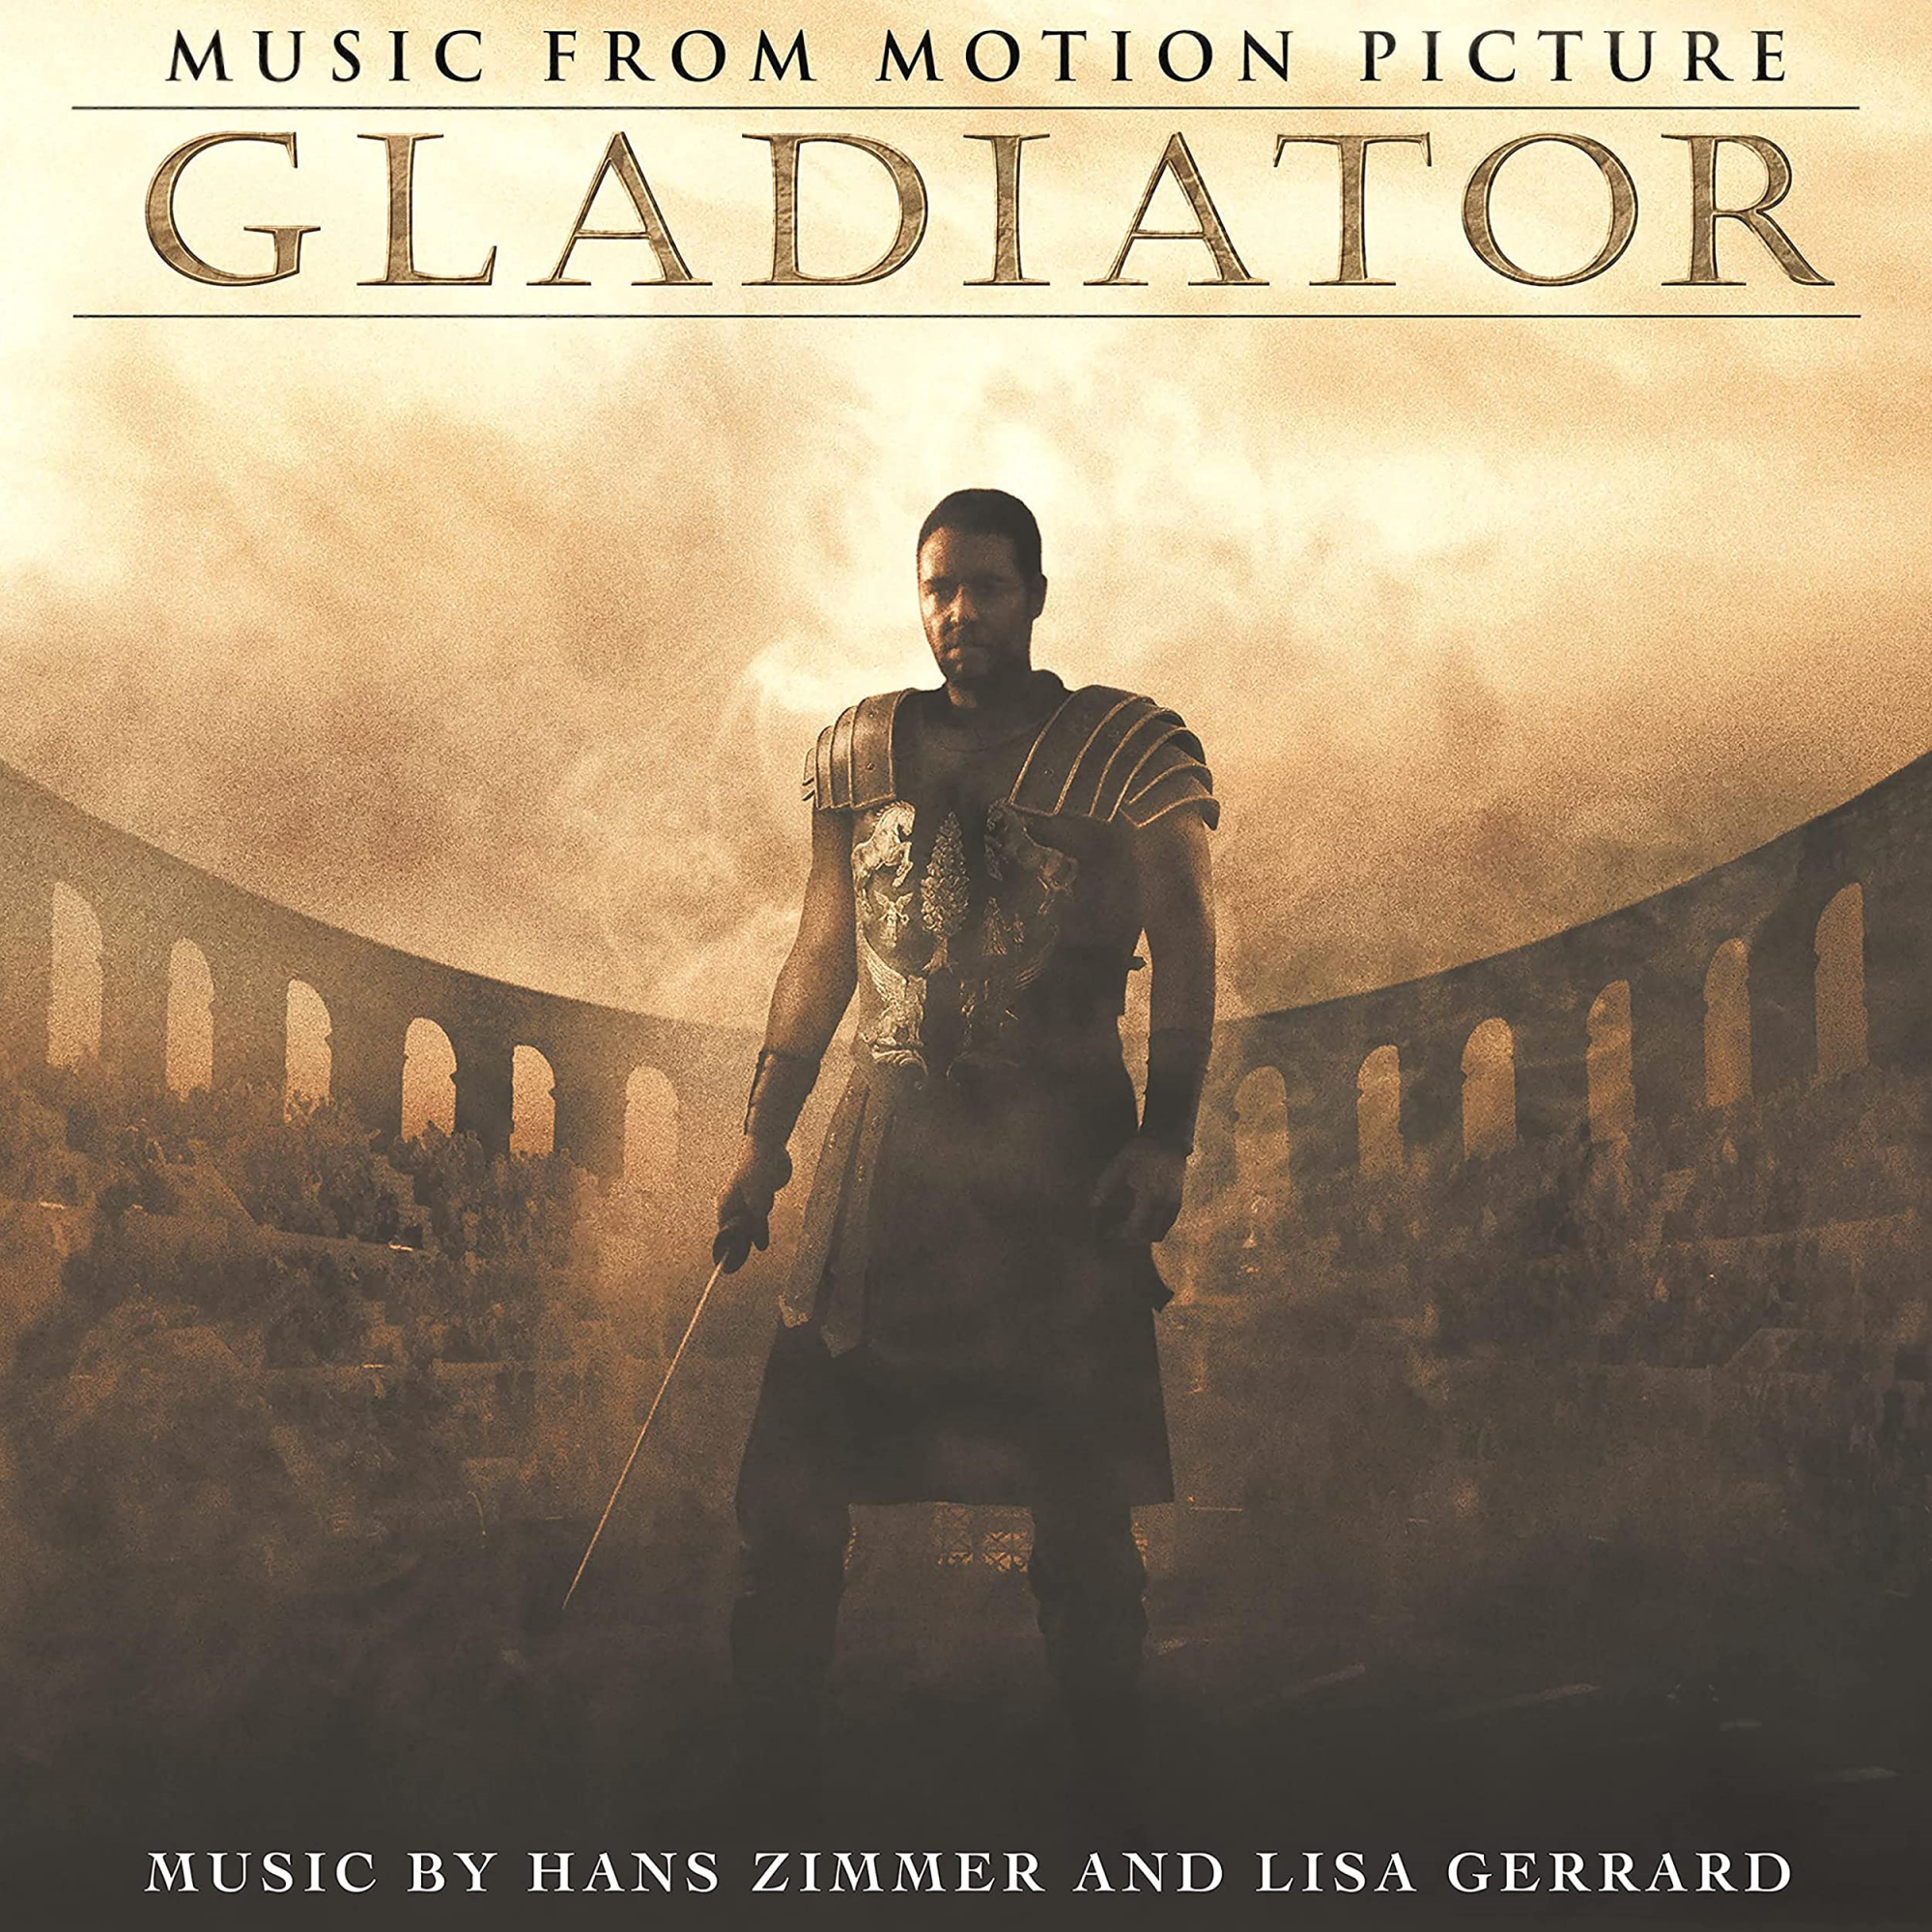 Vinile Hans Zimmer Lisa Gerrard - Gladiator Music From The Motion Picture 2 Lp NUOVO SIGILLATO EDIZIONE DEL SUBITO DISPONIBILE